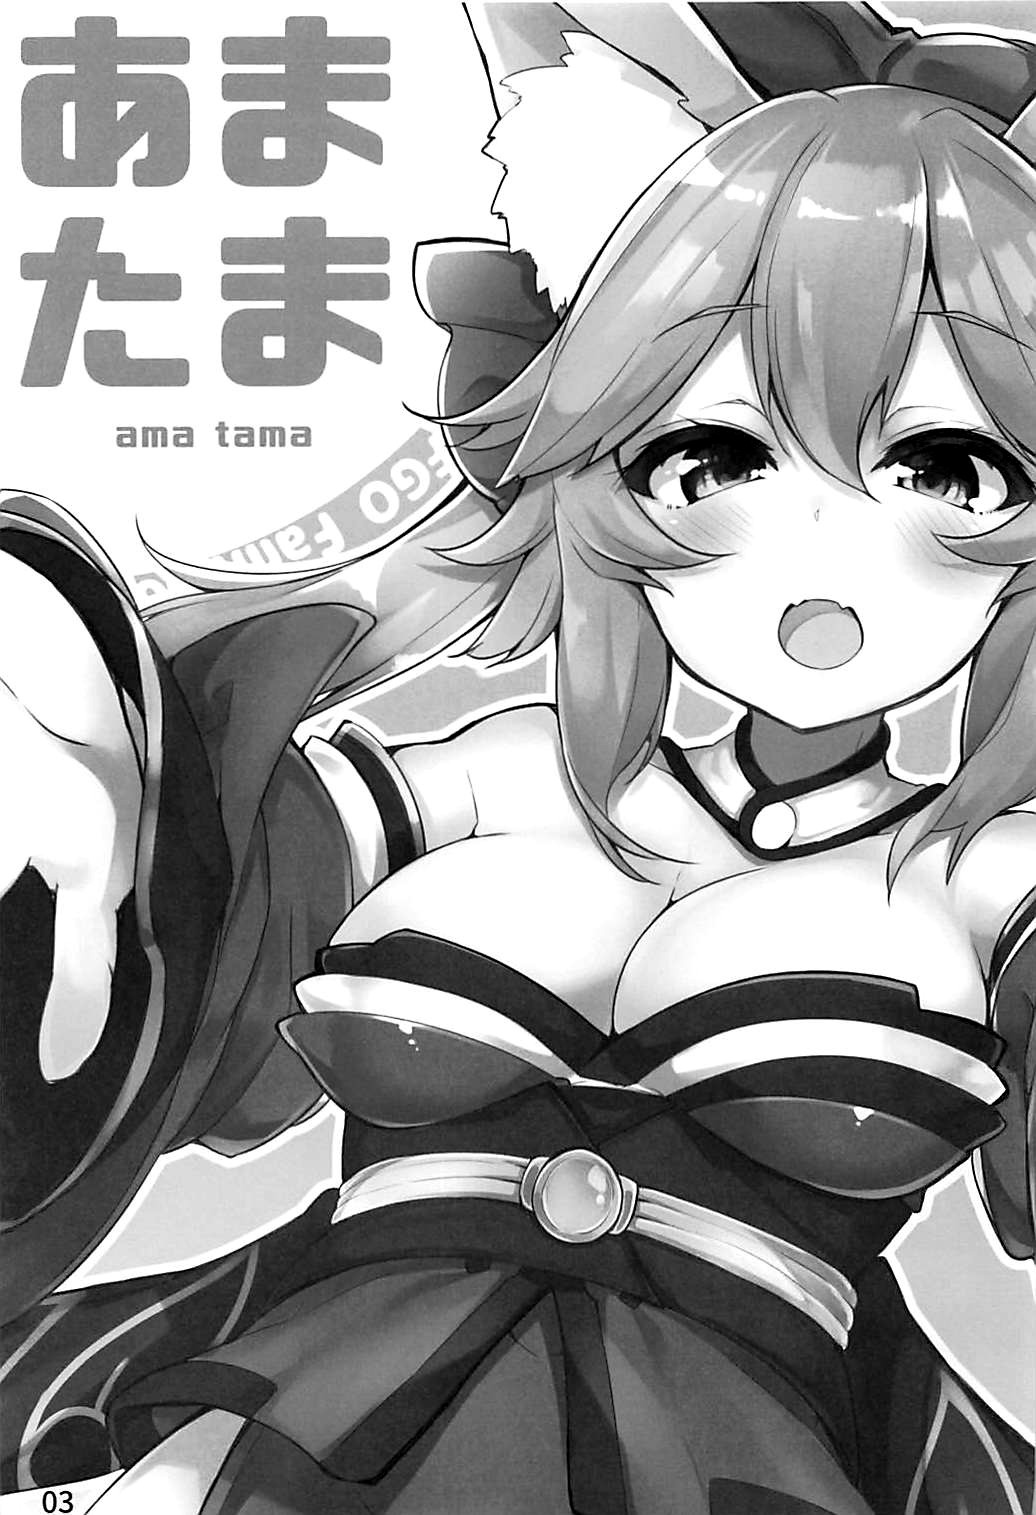 Hentai Manga Comic-Amatama-Read-2